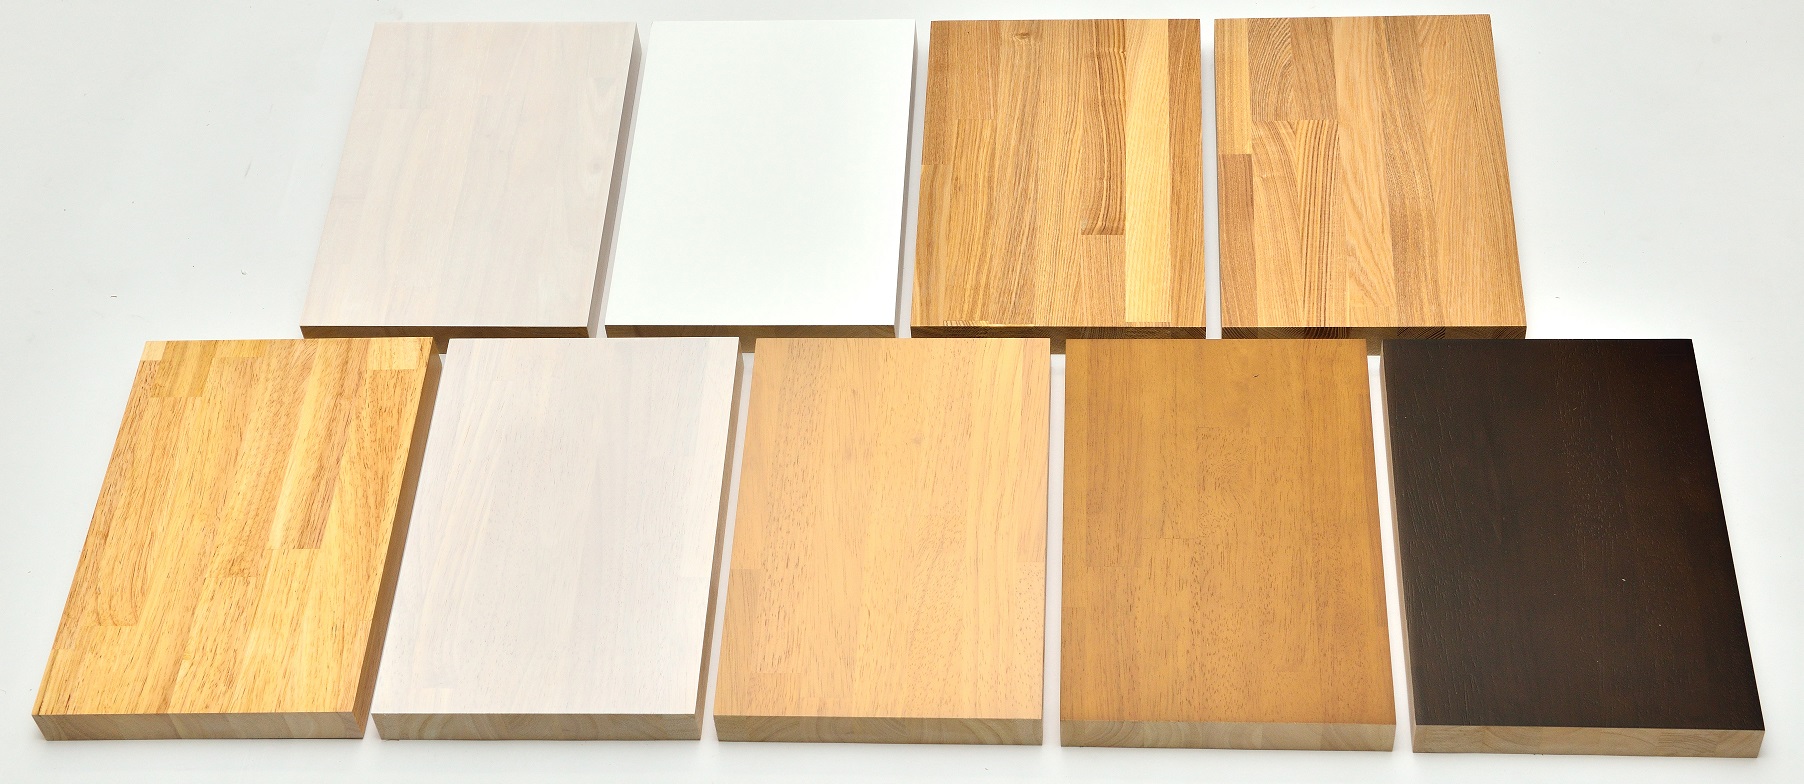 塗装の種類について 材木商店 無垢材 積層材 化粧貼り 白ポリの木材メーカー通販サイト